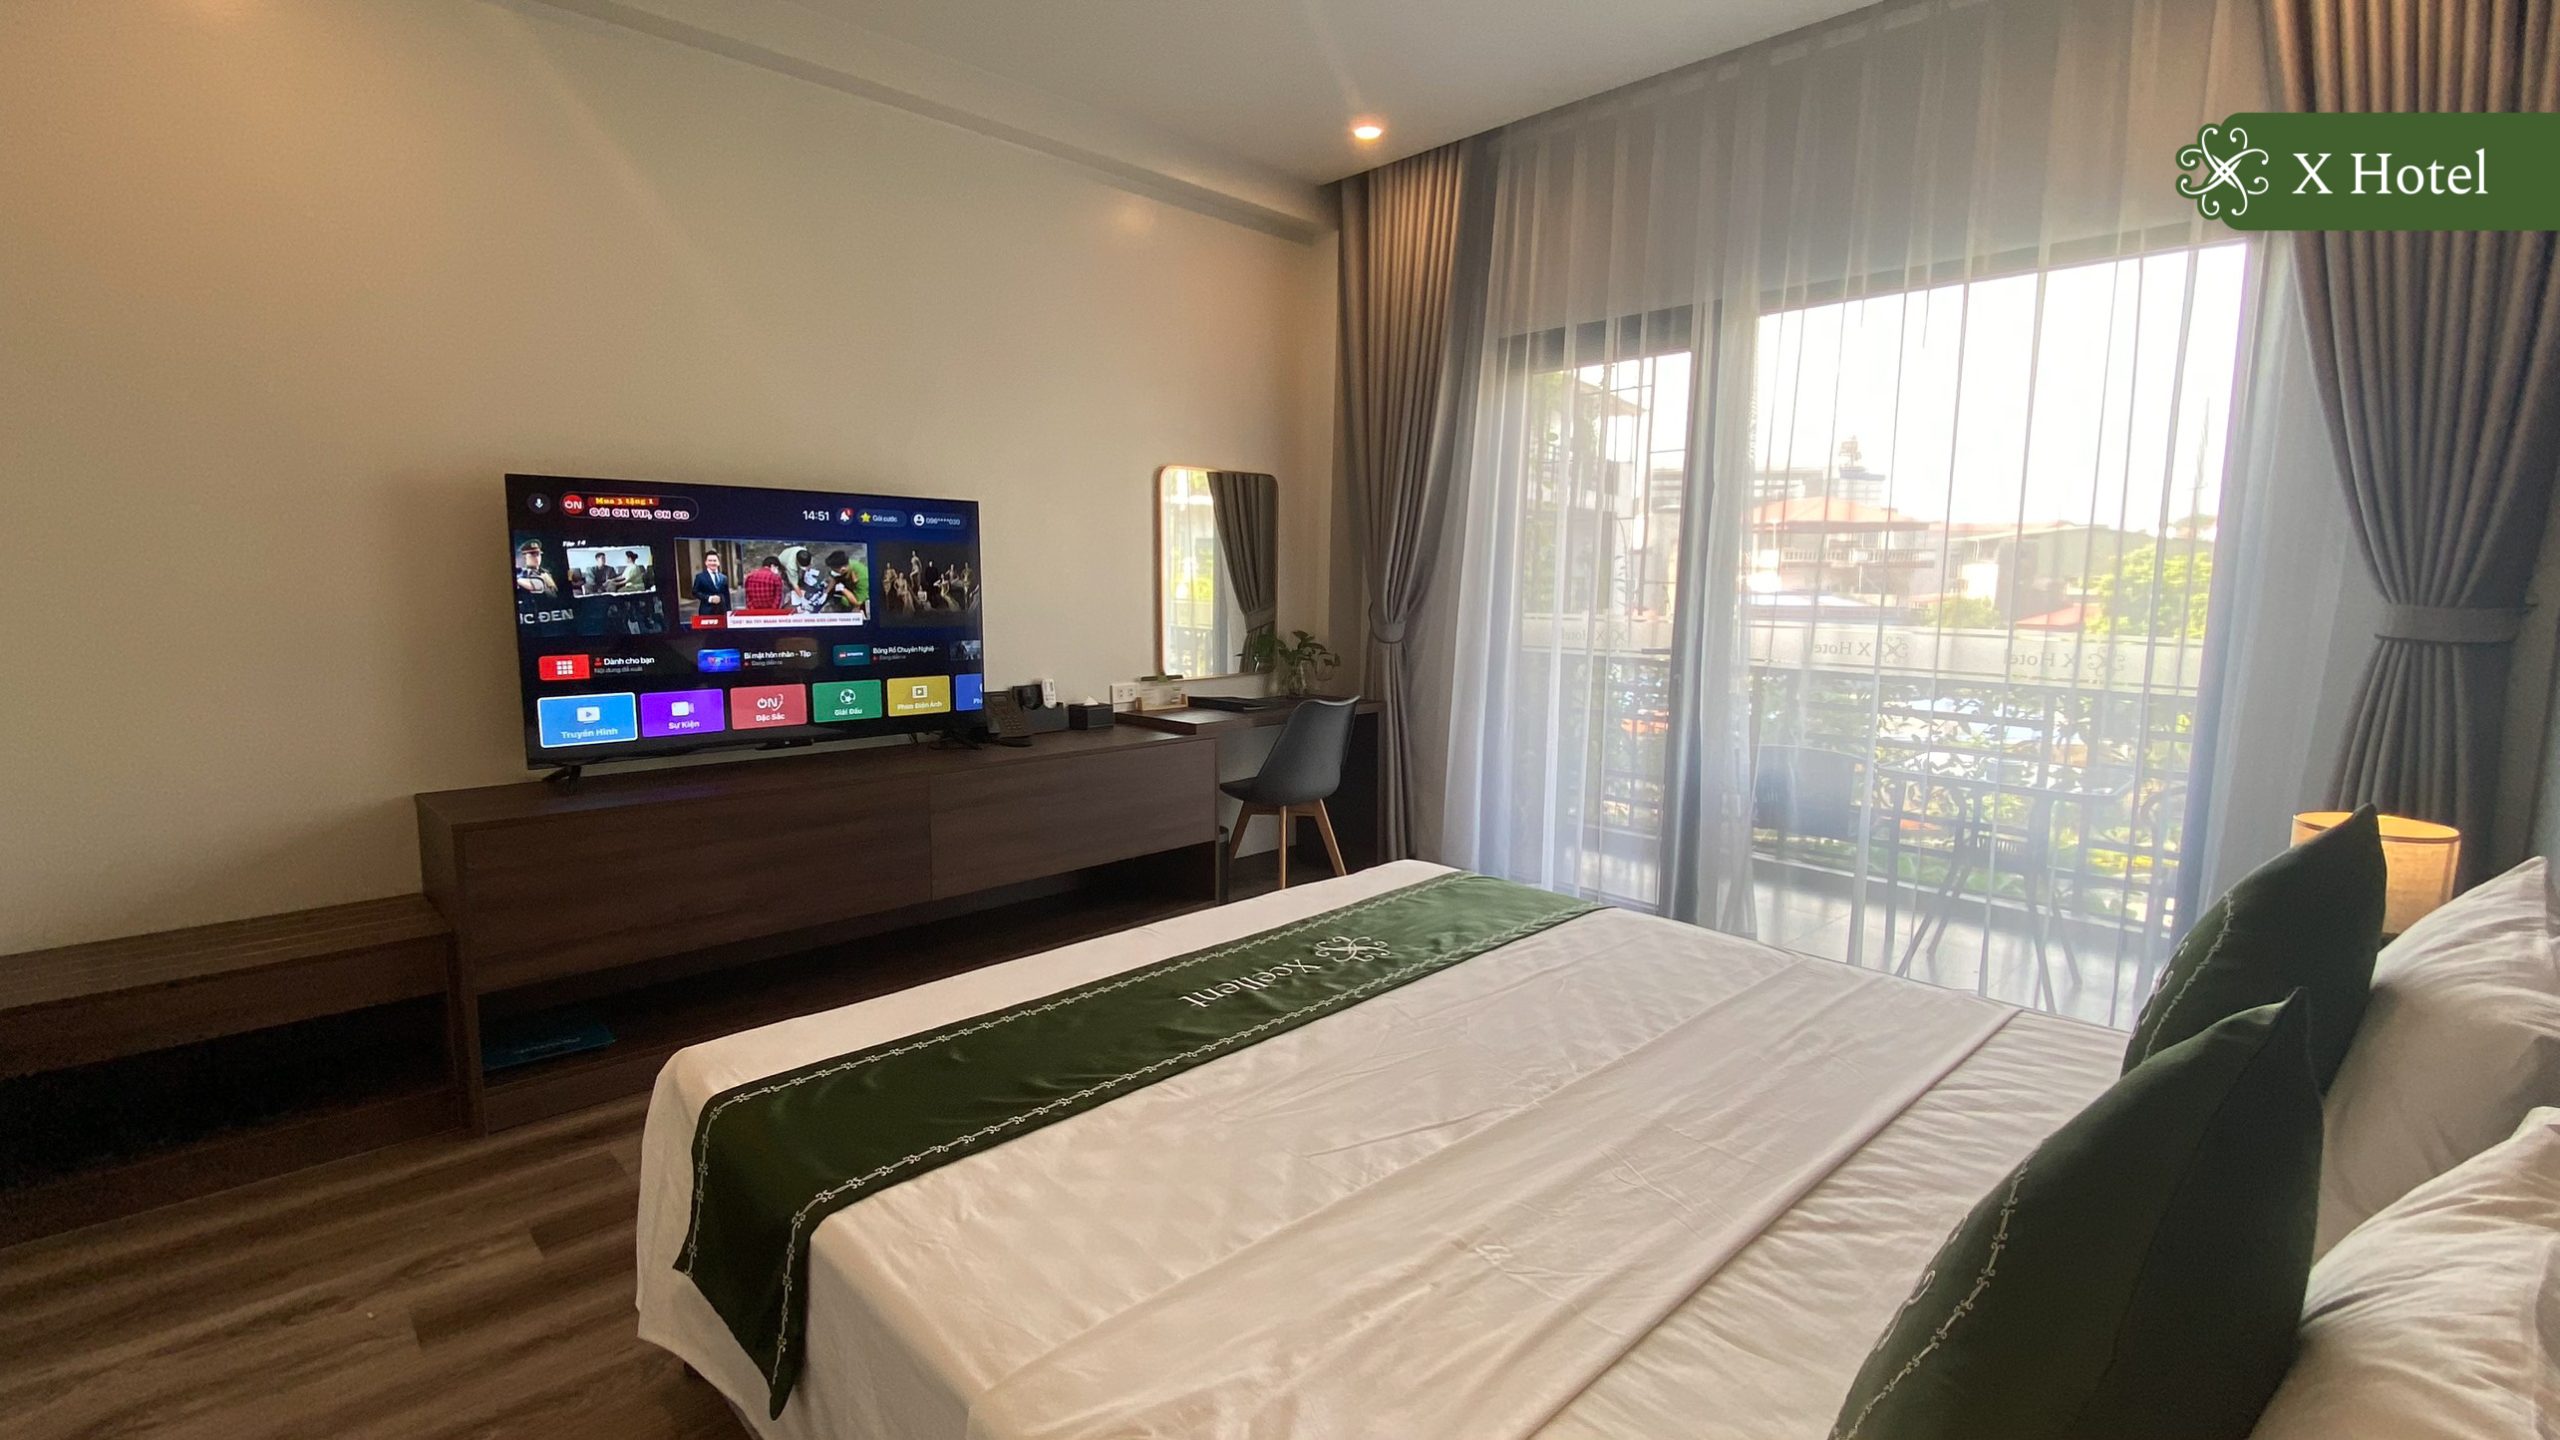 Khách sạn view đẹp Thái Nguyên - X Hotel có hệ thống phòng nghỉ dưỡng chuẩn 3 sao